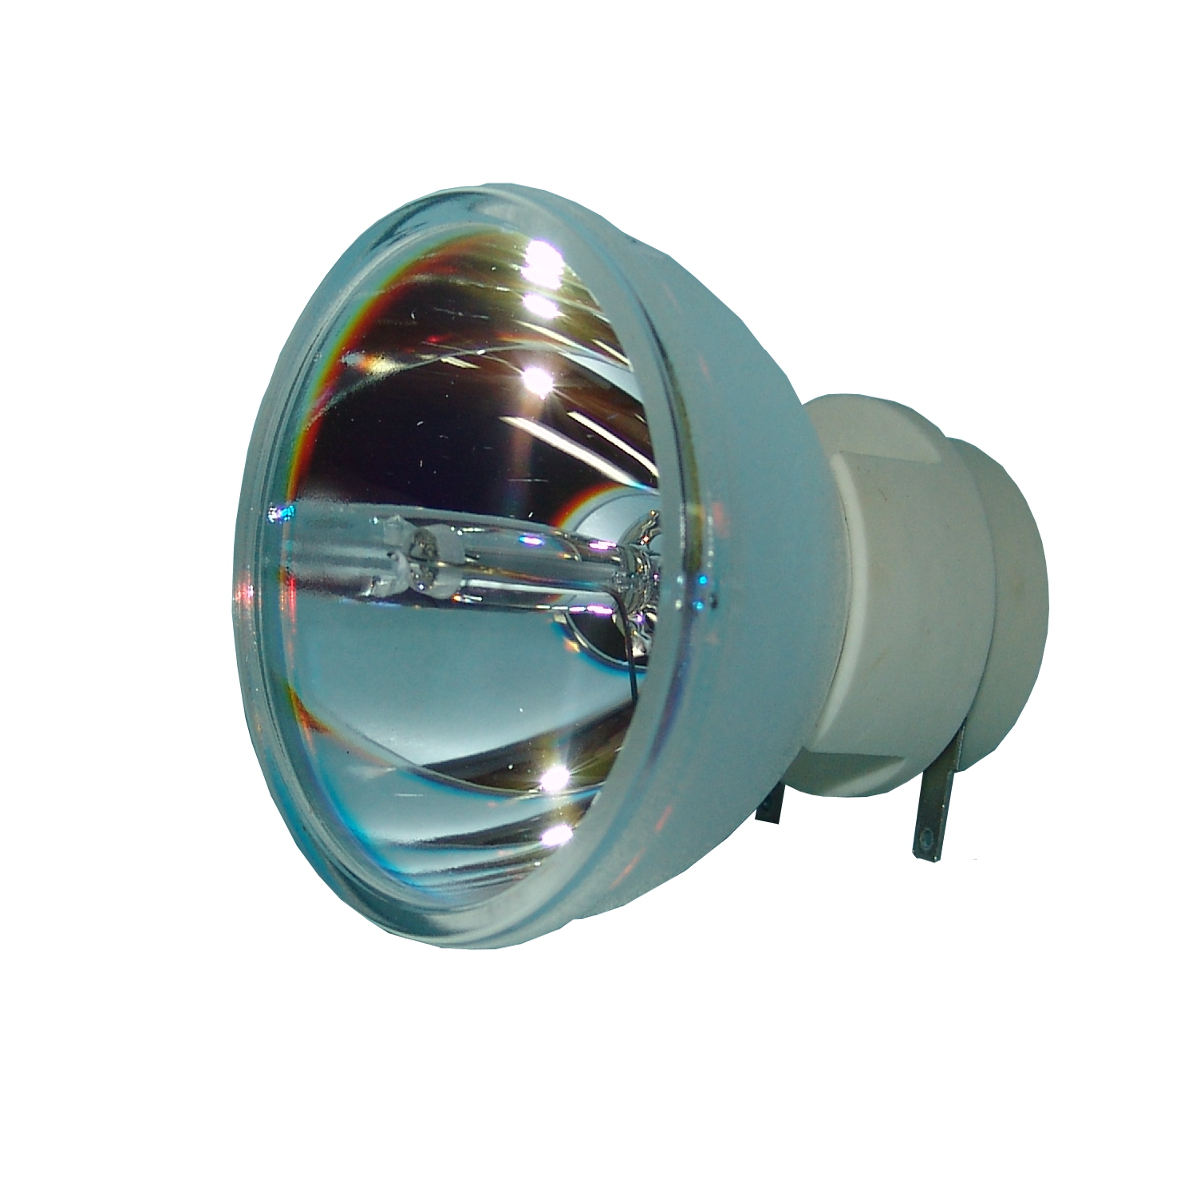 Alda PQ Professionell Beamerlampe für BenQ 5J.J0705.001 Projektoren mit Osram P-VIP Birne ohne Gehäuse